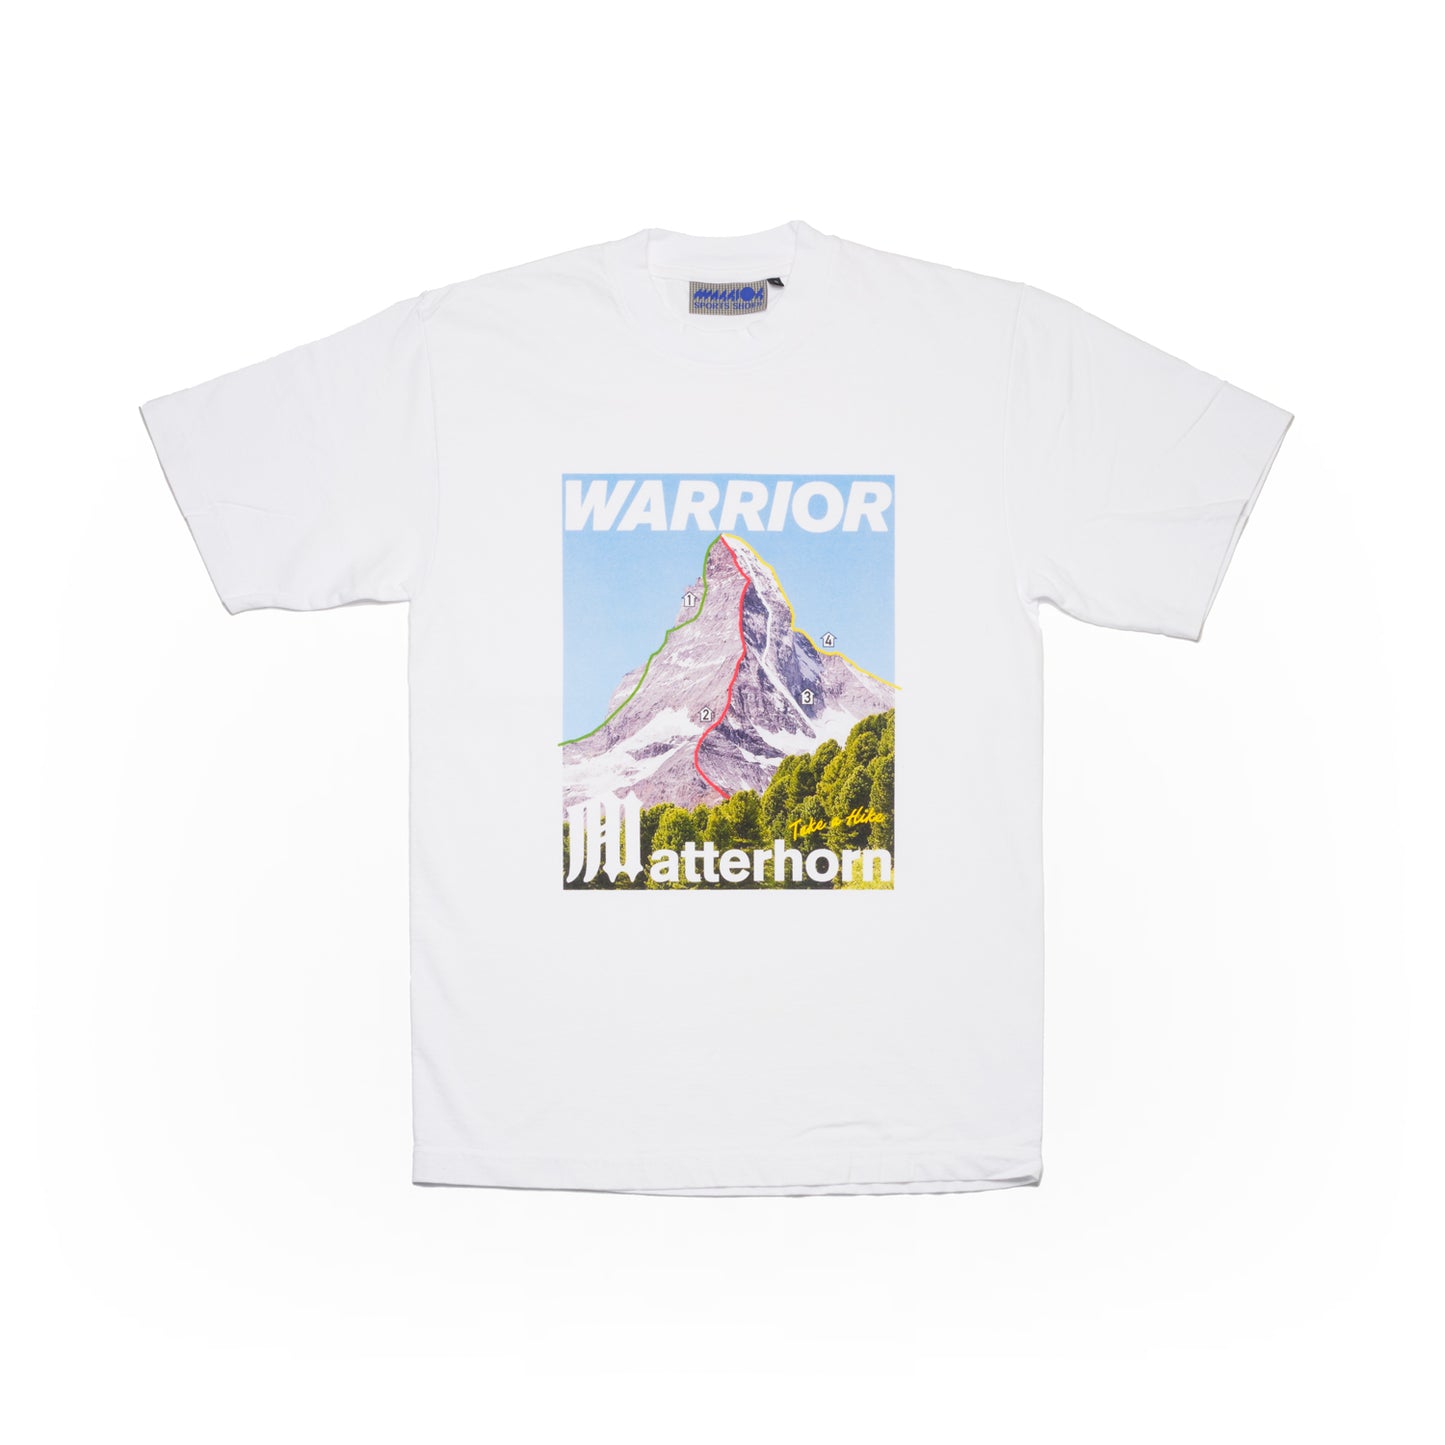 Matterhorn Tourist T-shirt